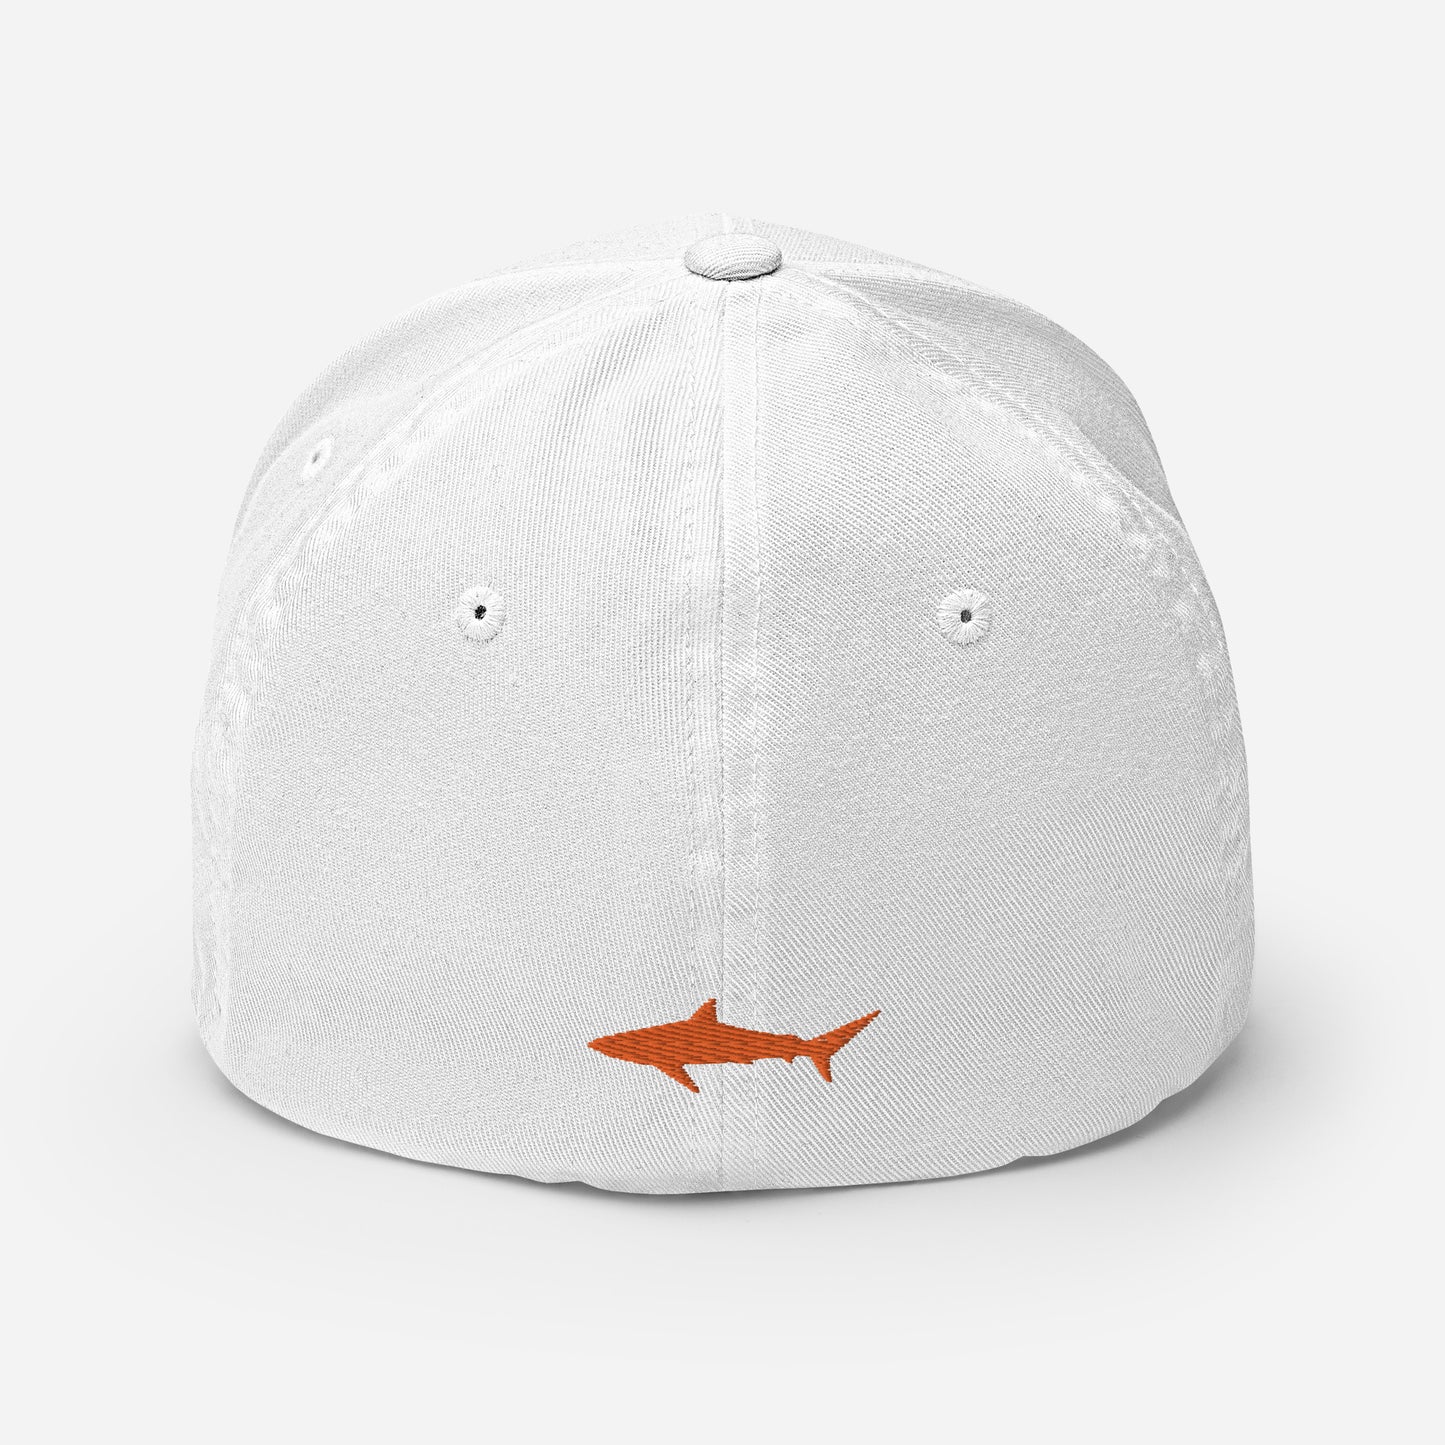 Flex-Fit Shark Emboidered Hat with Orange Thread